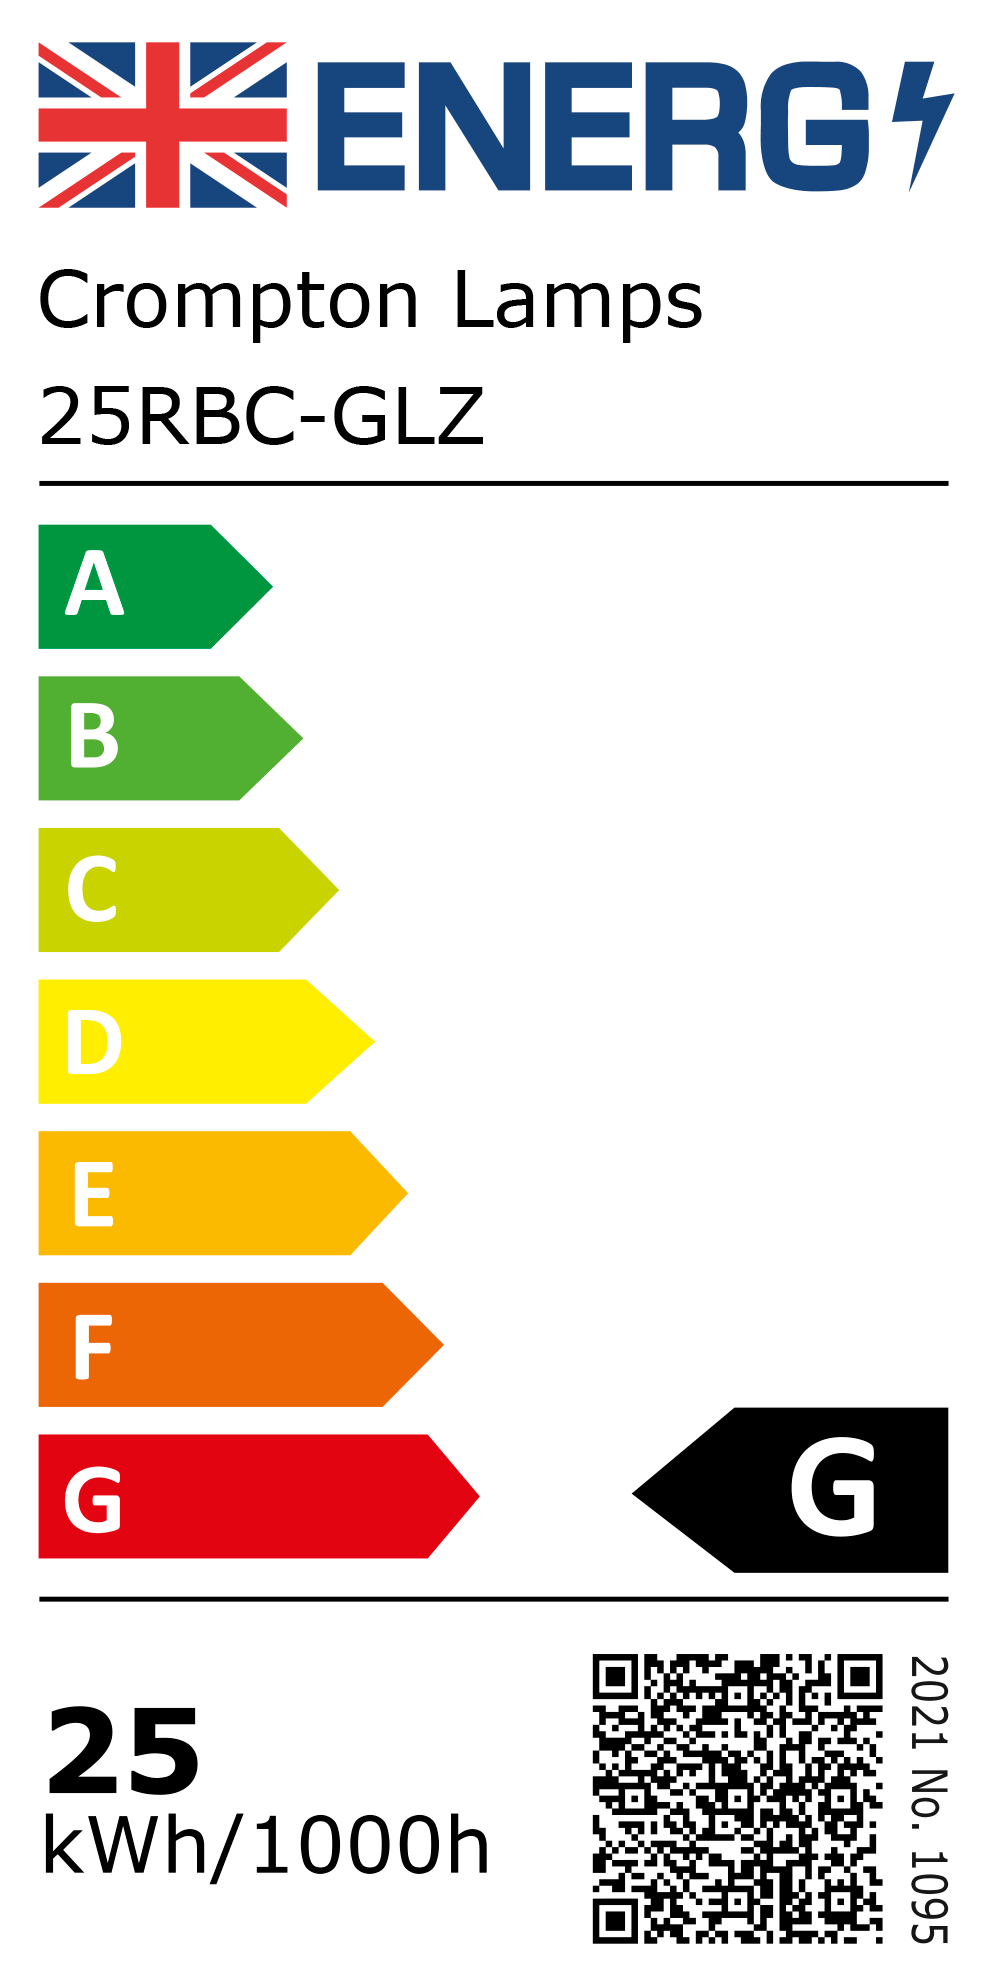 New 2021 Energy Rating Label: Stock Code 25RBC-GLZ